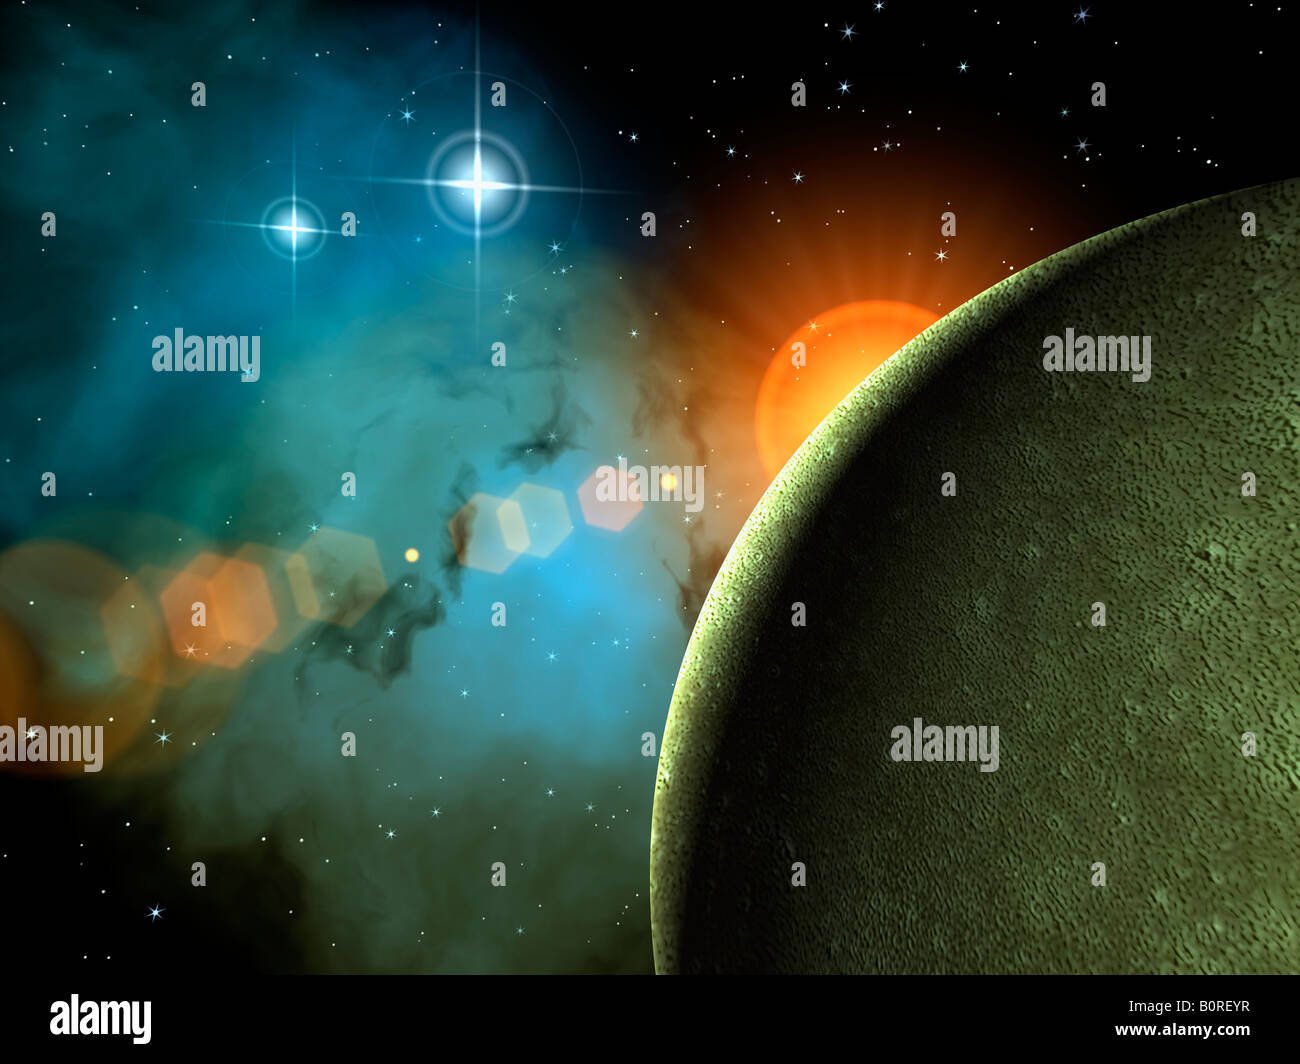 Lo spazio esterno in scena con exoplanet, stelle e nebulose. Foto Stock